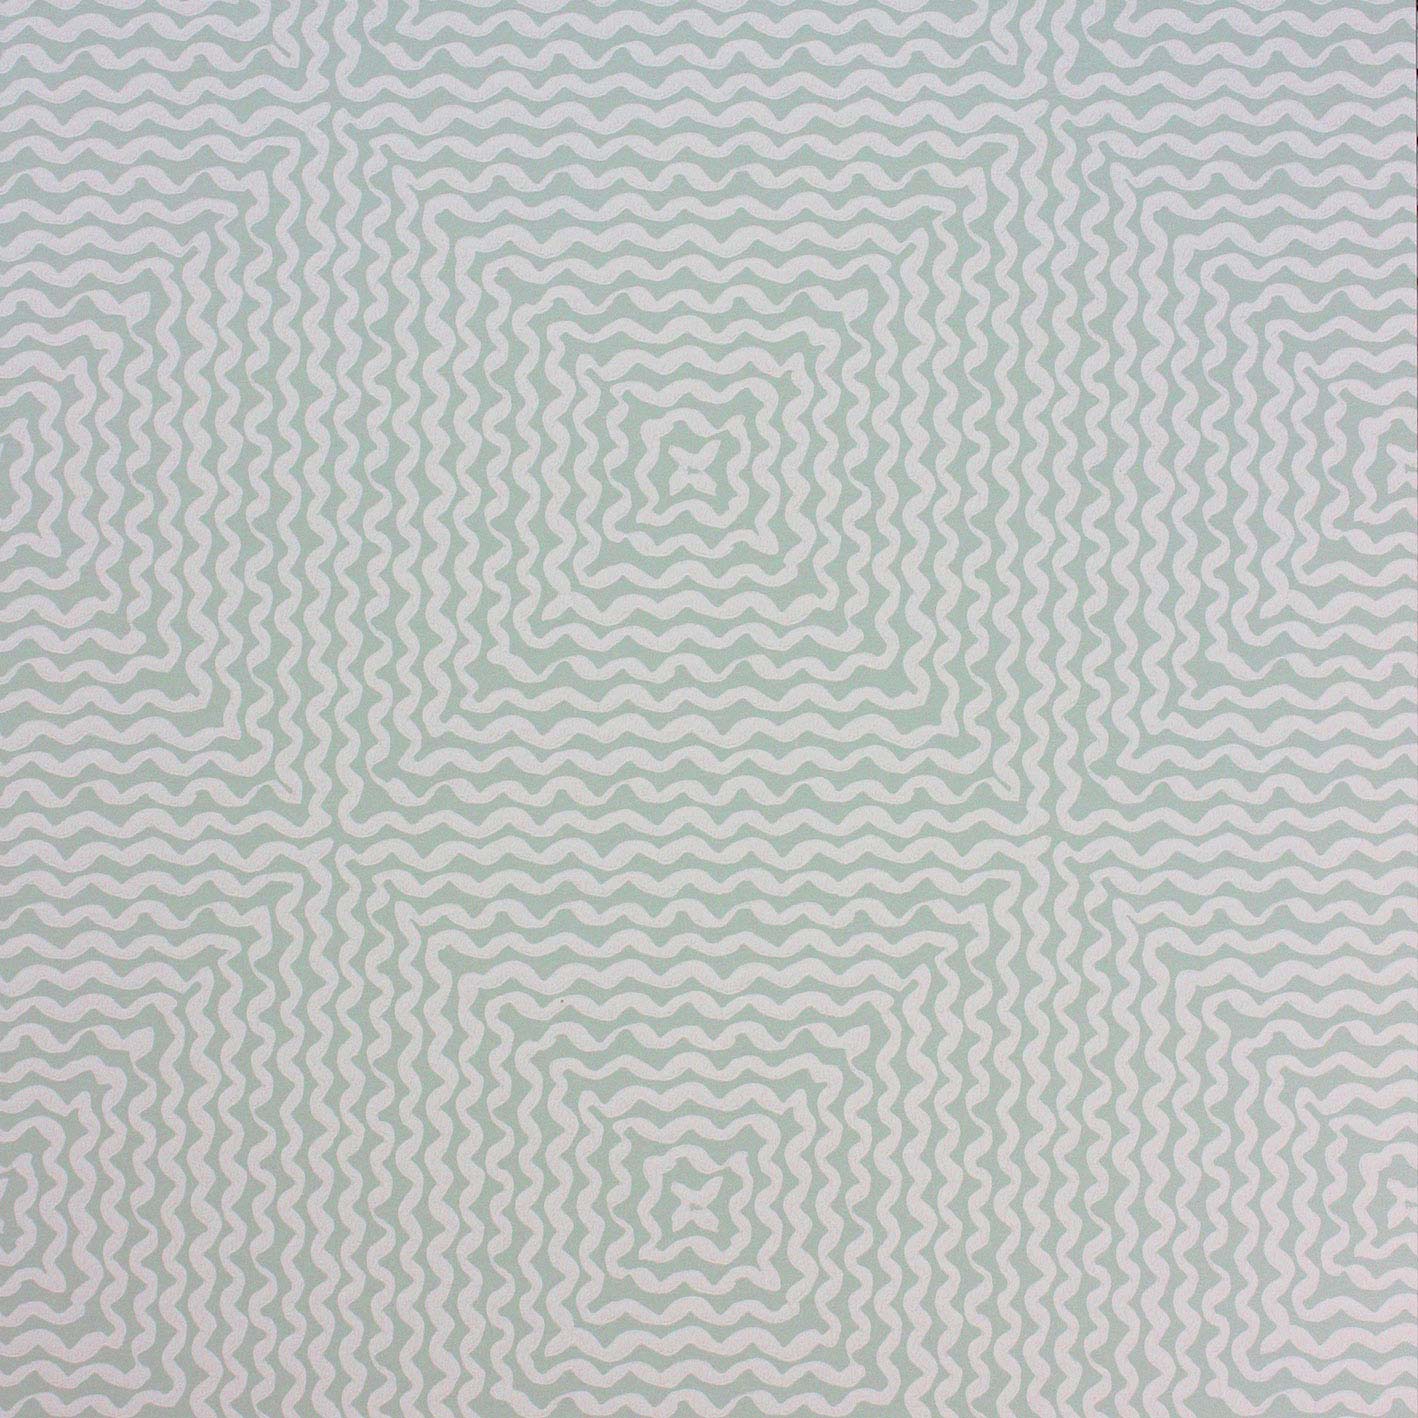 Nina Campbell Wallpaper - Les Rêves Mourlot Aqua NCW4302-04